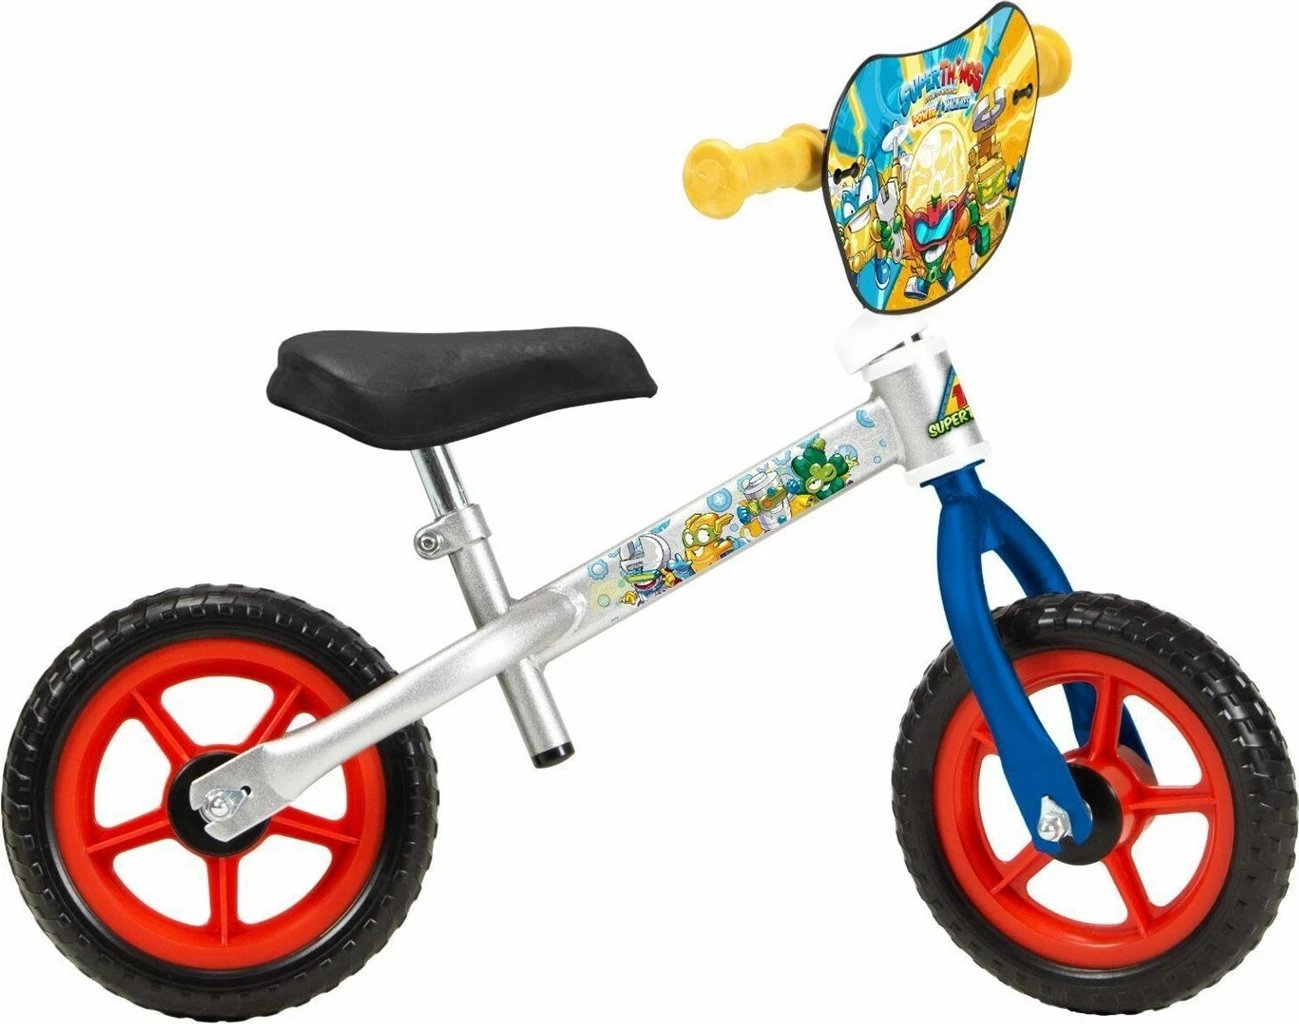 Biçikletë e ekuilibrit për fëmijë Toimsa TOI186 Super Things